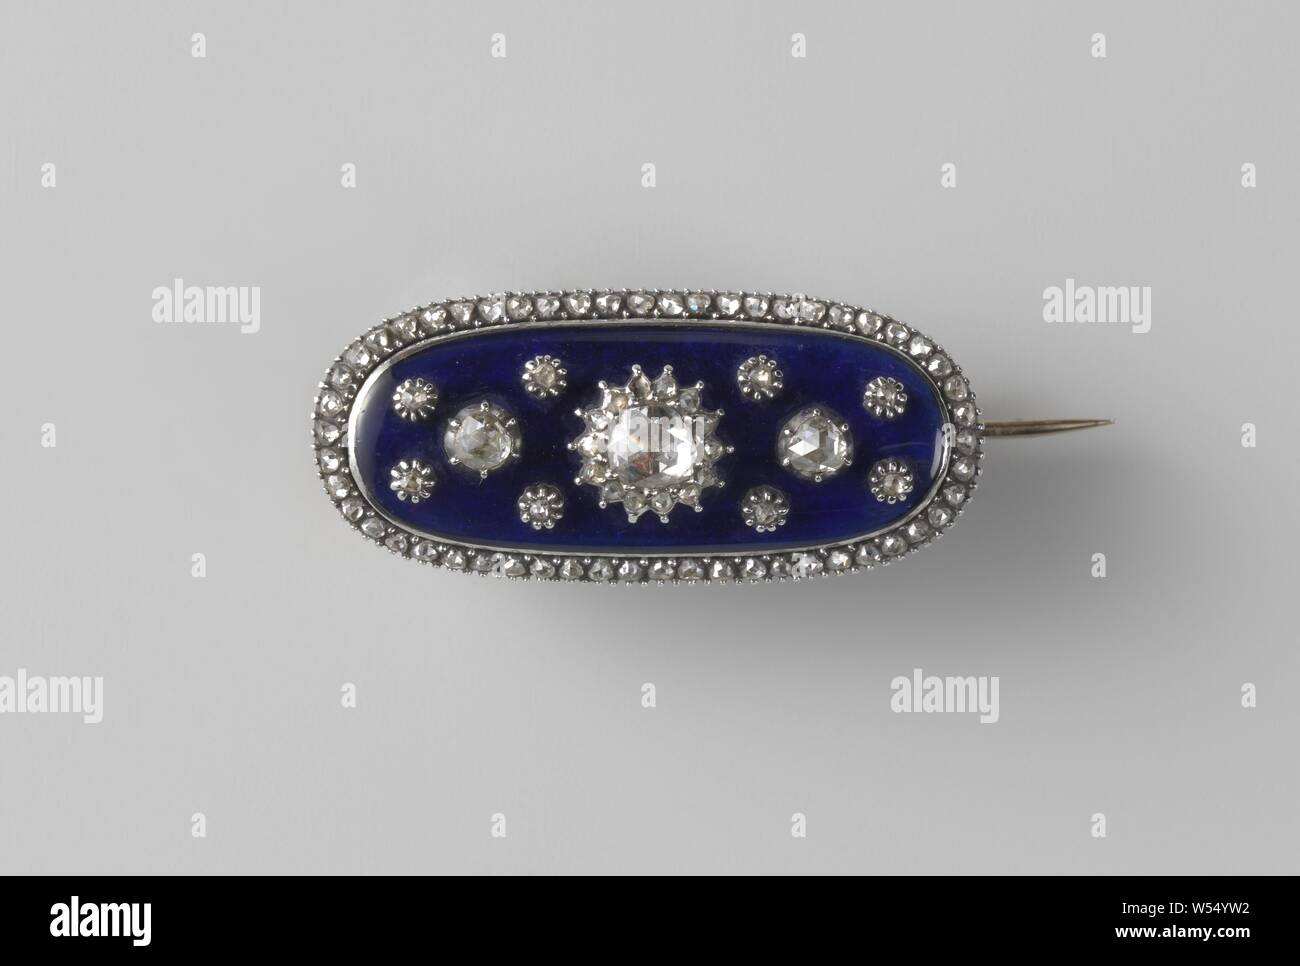 Ovale Brosche 'au Firmament", emailliertes Gold Brosche mit Diamanten. Gestreckt ovale Form und mit einer Grenze von Diamanten umgeben. Das Zentrum ist blau emailliert, mit einem regelmäßigen Muster mit Diamanten in der it, was einem Sternenhimmel. (Ursprünglich im oberen Teil von einem Ring.), anonym, Frankreich (möglicherweise), 1785-1800, gold (Metall), Diamond (mineralischen), h 1,6 cm × w 3,5 cm Stockfoto